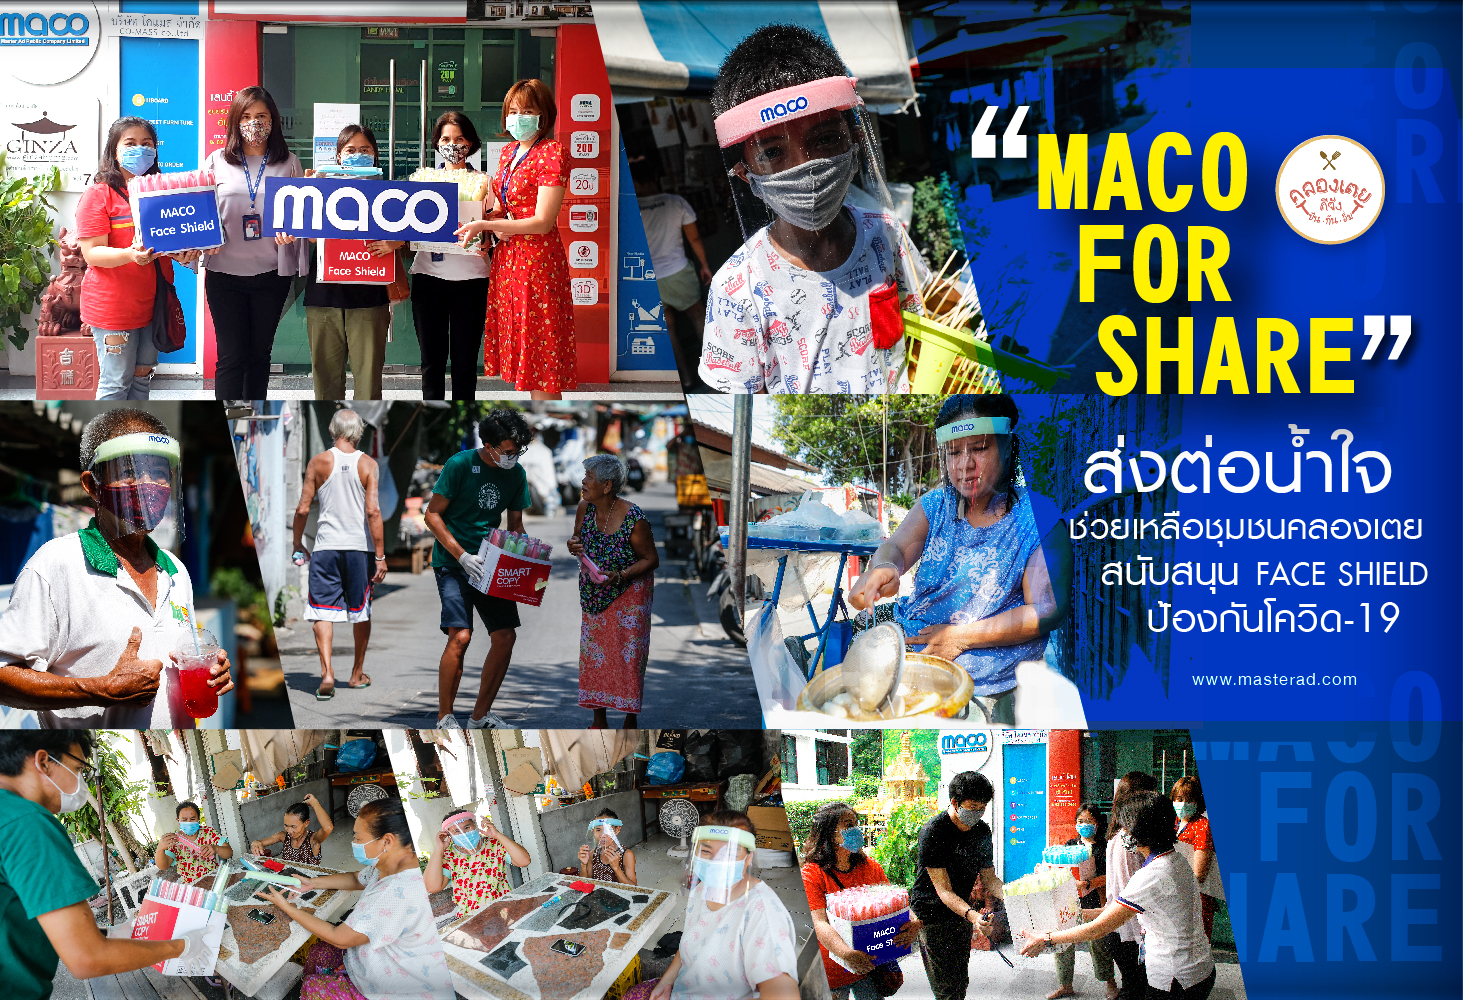 MACO FOR SHARE ส่งต่อน้ำใจช่วยเหลือชาวชุมชนคลองเตย สนับสนุนอุปกรณ์ป้องกันโควิด-19 หรือ face shield 